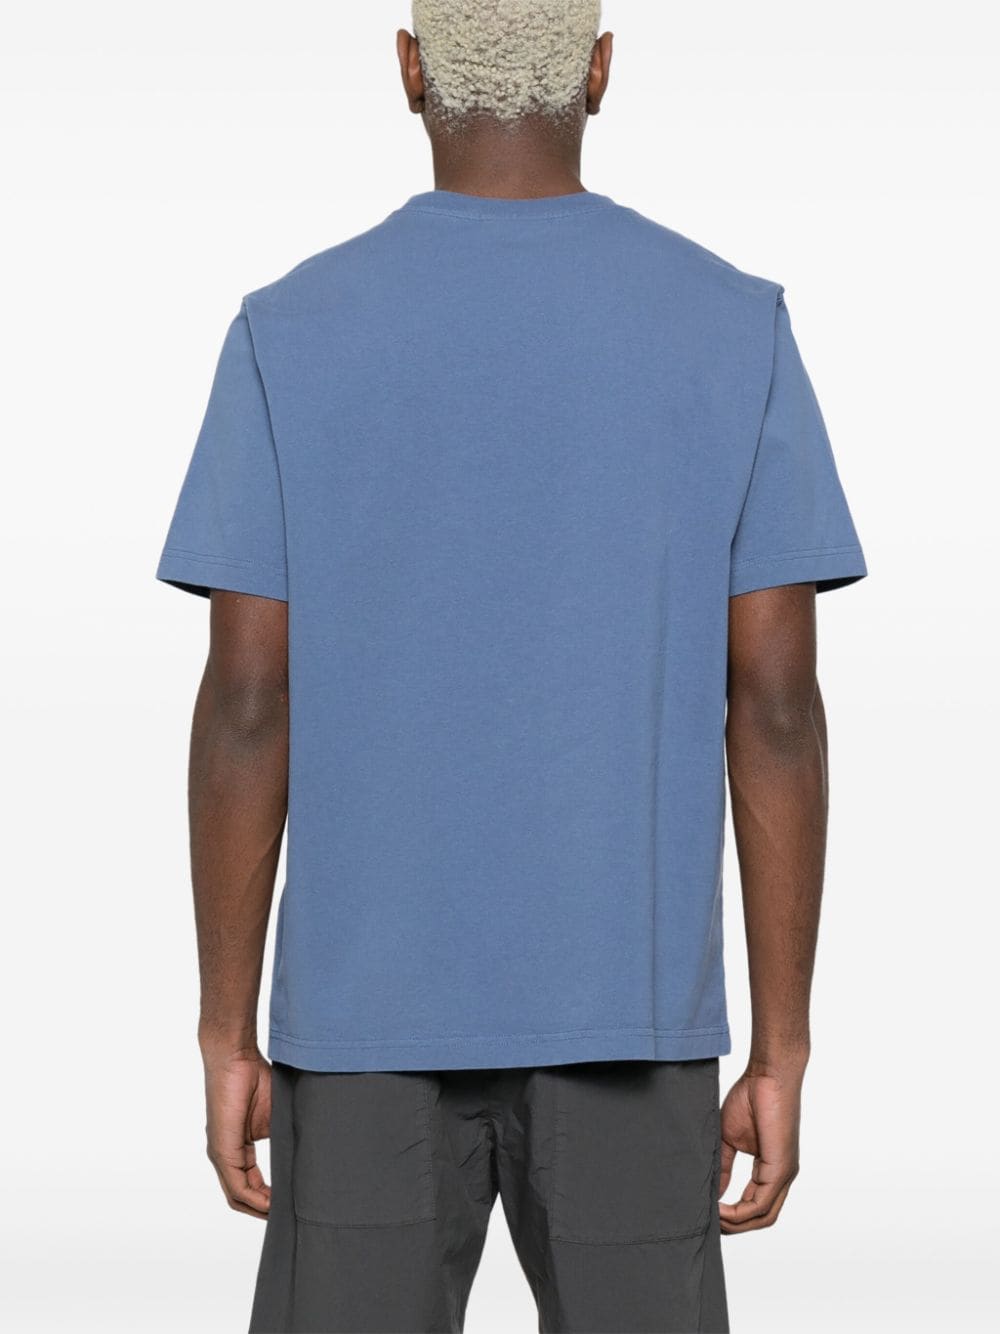 Maison Kitsuné - T-shirt Storm blue en coton à logo Handwriting - Lothaire